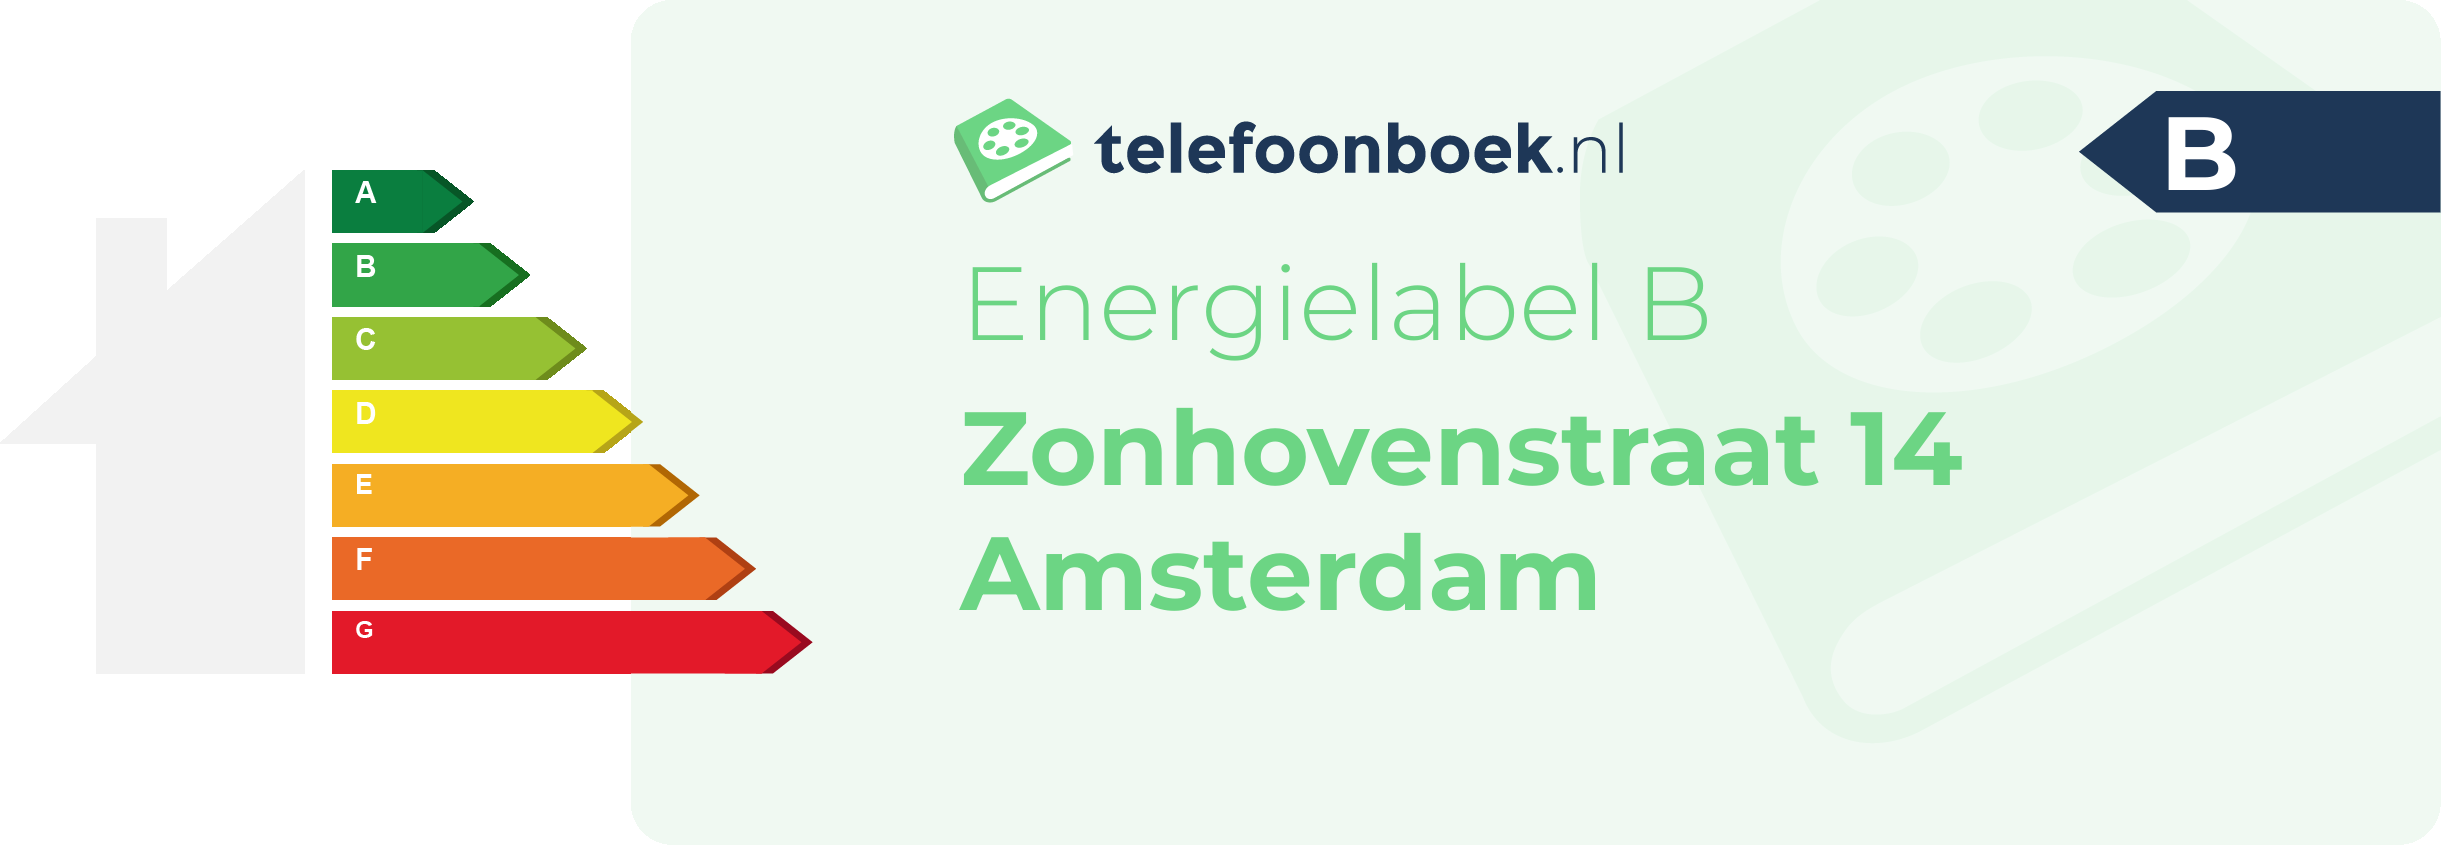 Energielabel Zonhovenstraat 14 Amsterdam